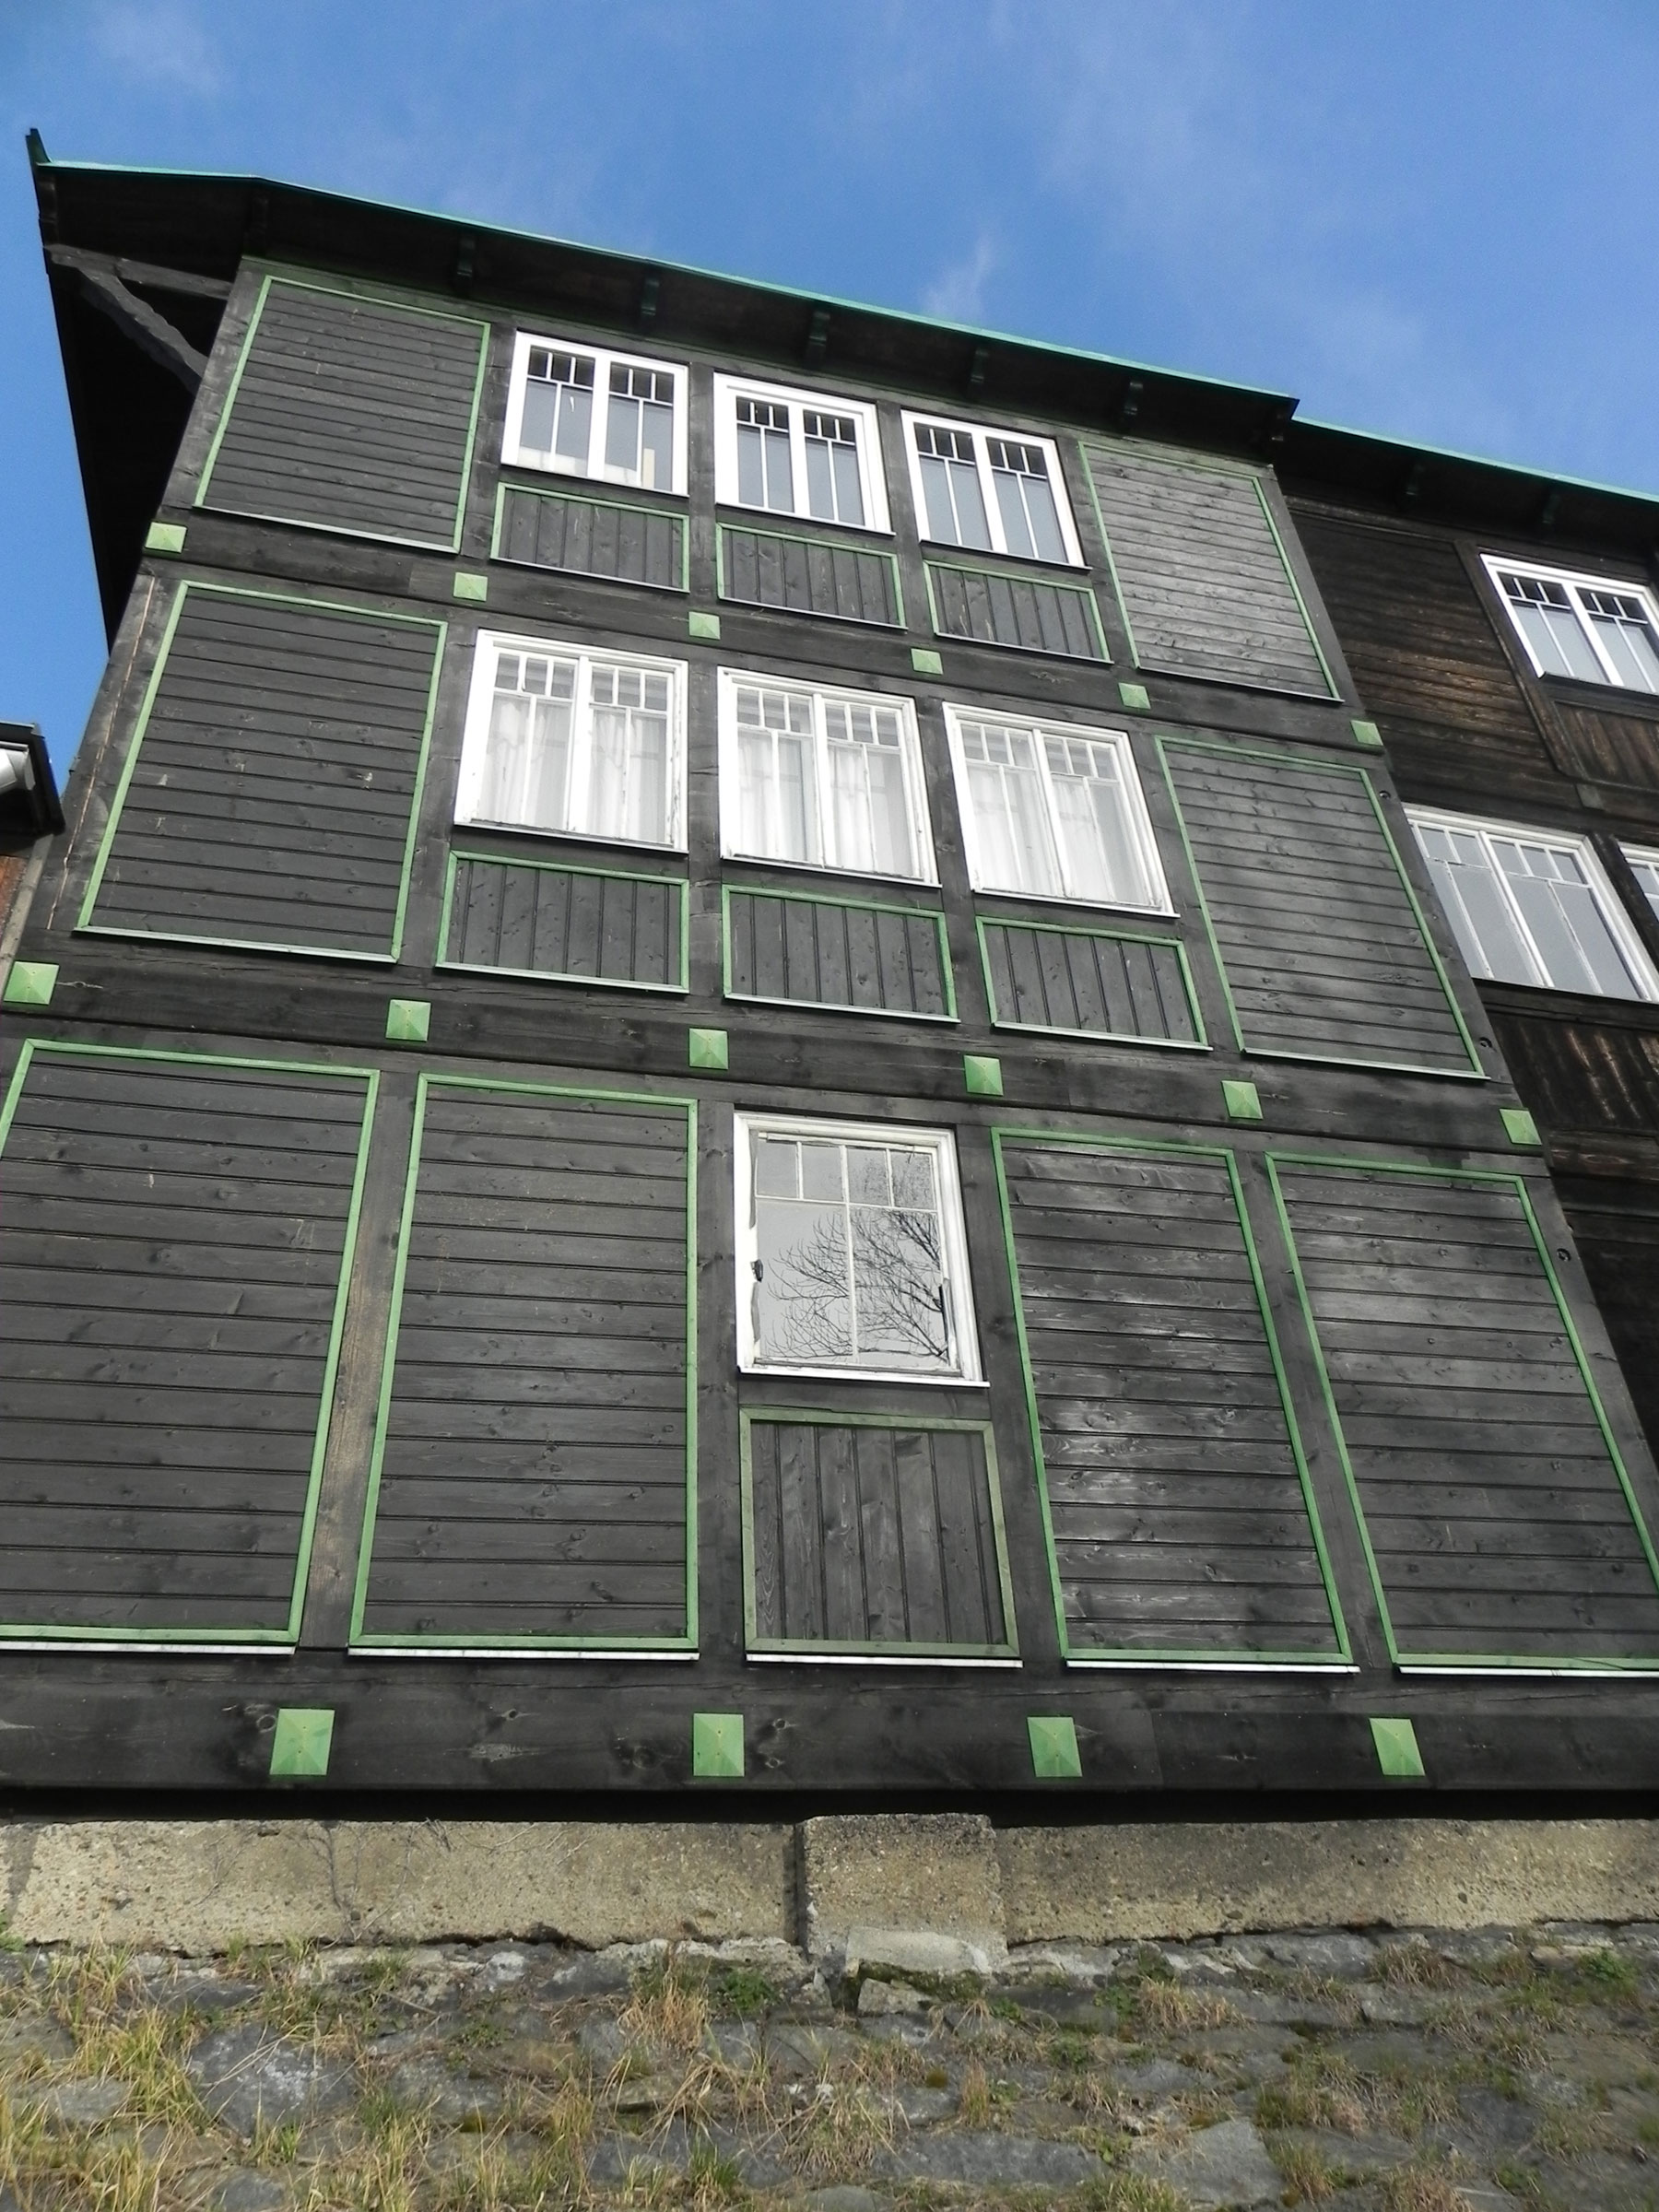 Výzdoba fasády je jednoduchá dřevěná. Plasticky soustružené dřevěné zelené kostky spolu se zelenými laťkami tmavou hladkou fasádu dynamizují a dávají jí punc začátku 20. století.